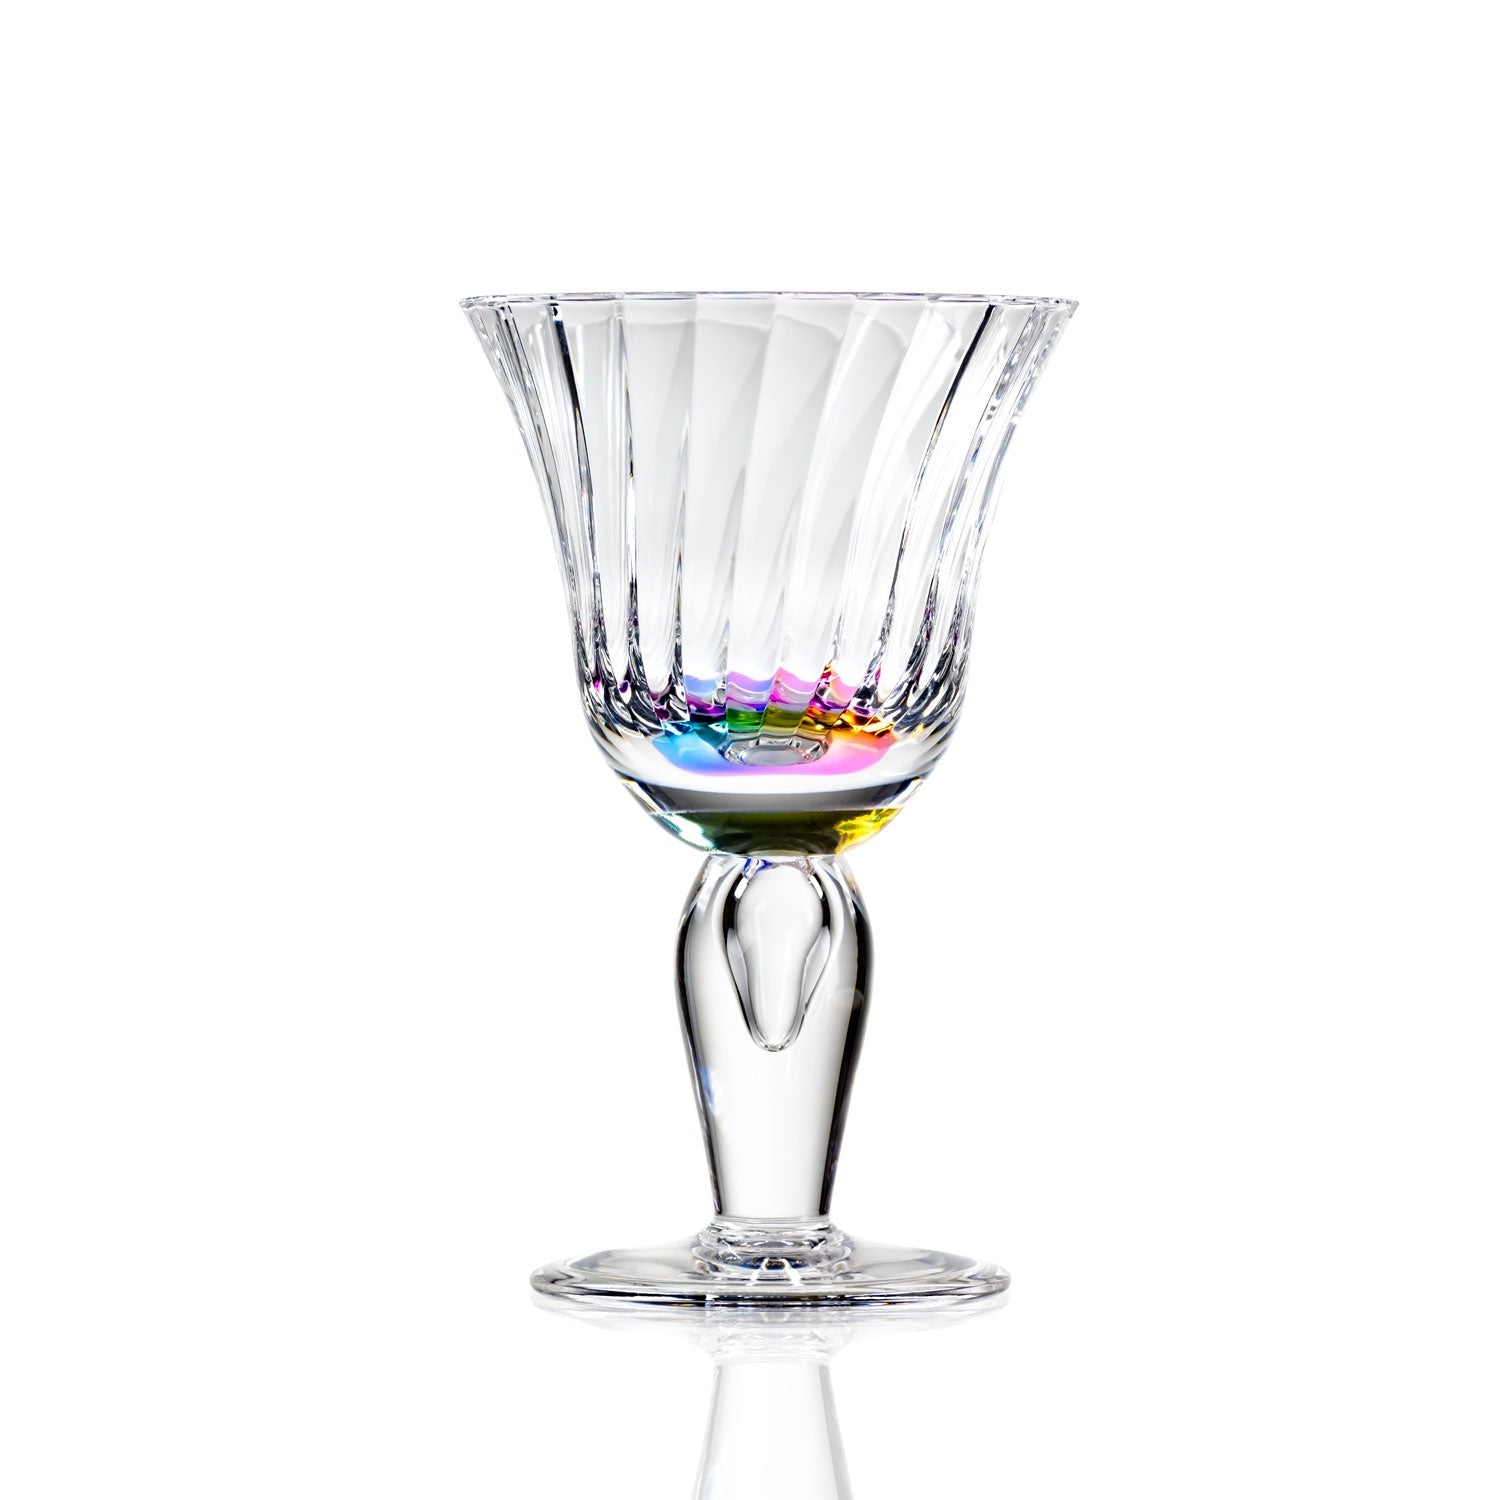 Merritt Designs Venezia Rainbow 10oz Acrylic Wine Stemware